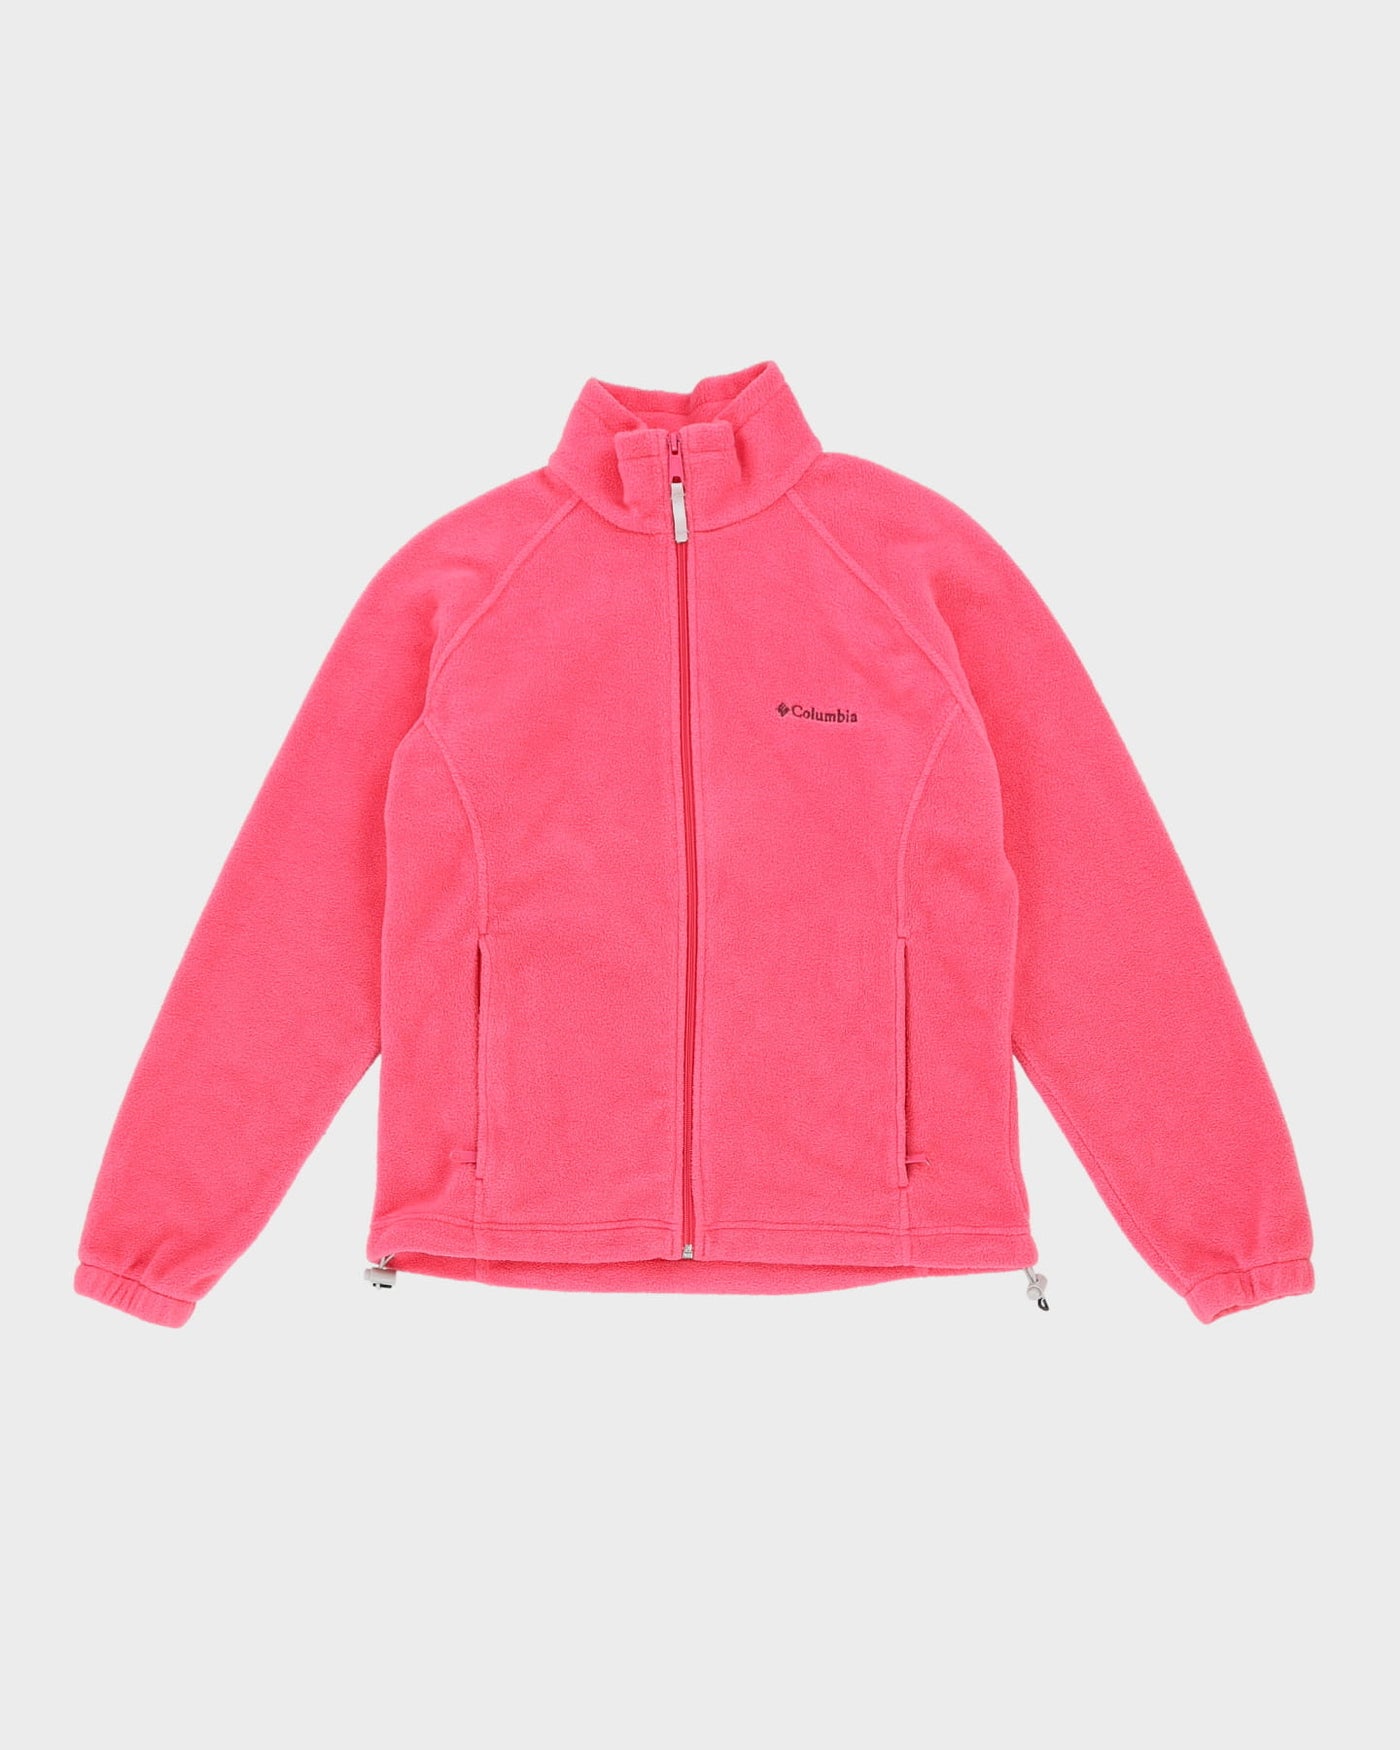 Columbia Pink Full-Zip Fleece - M